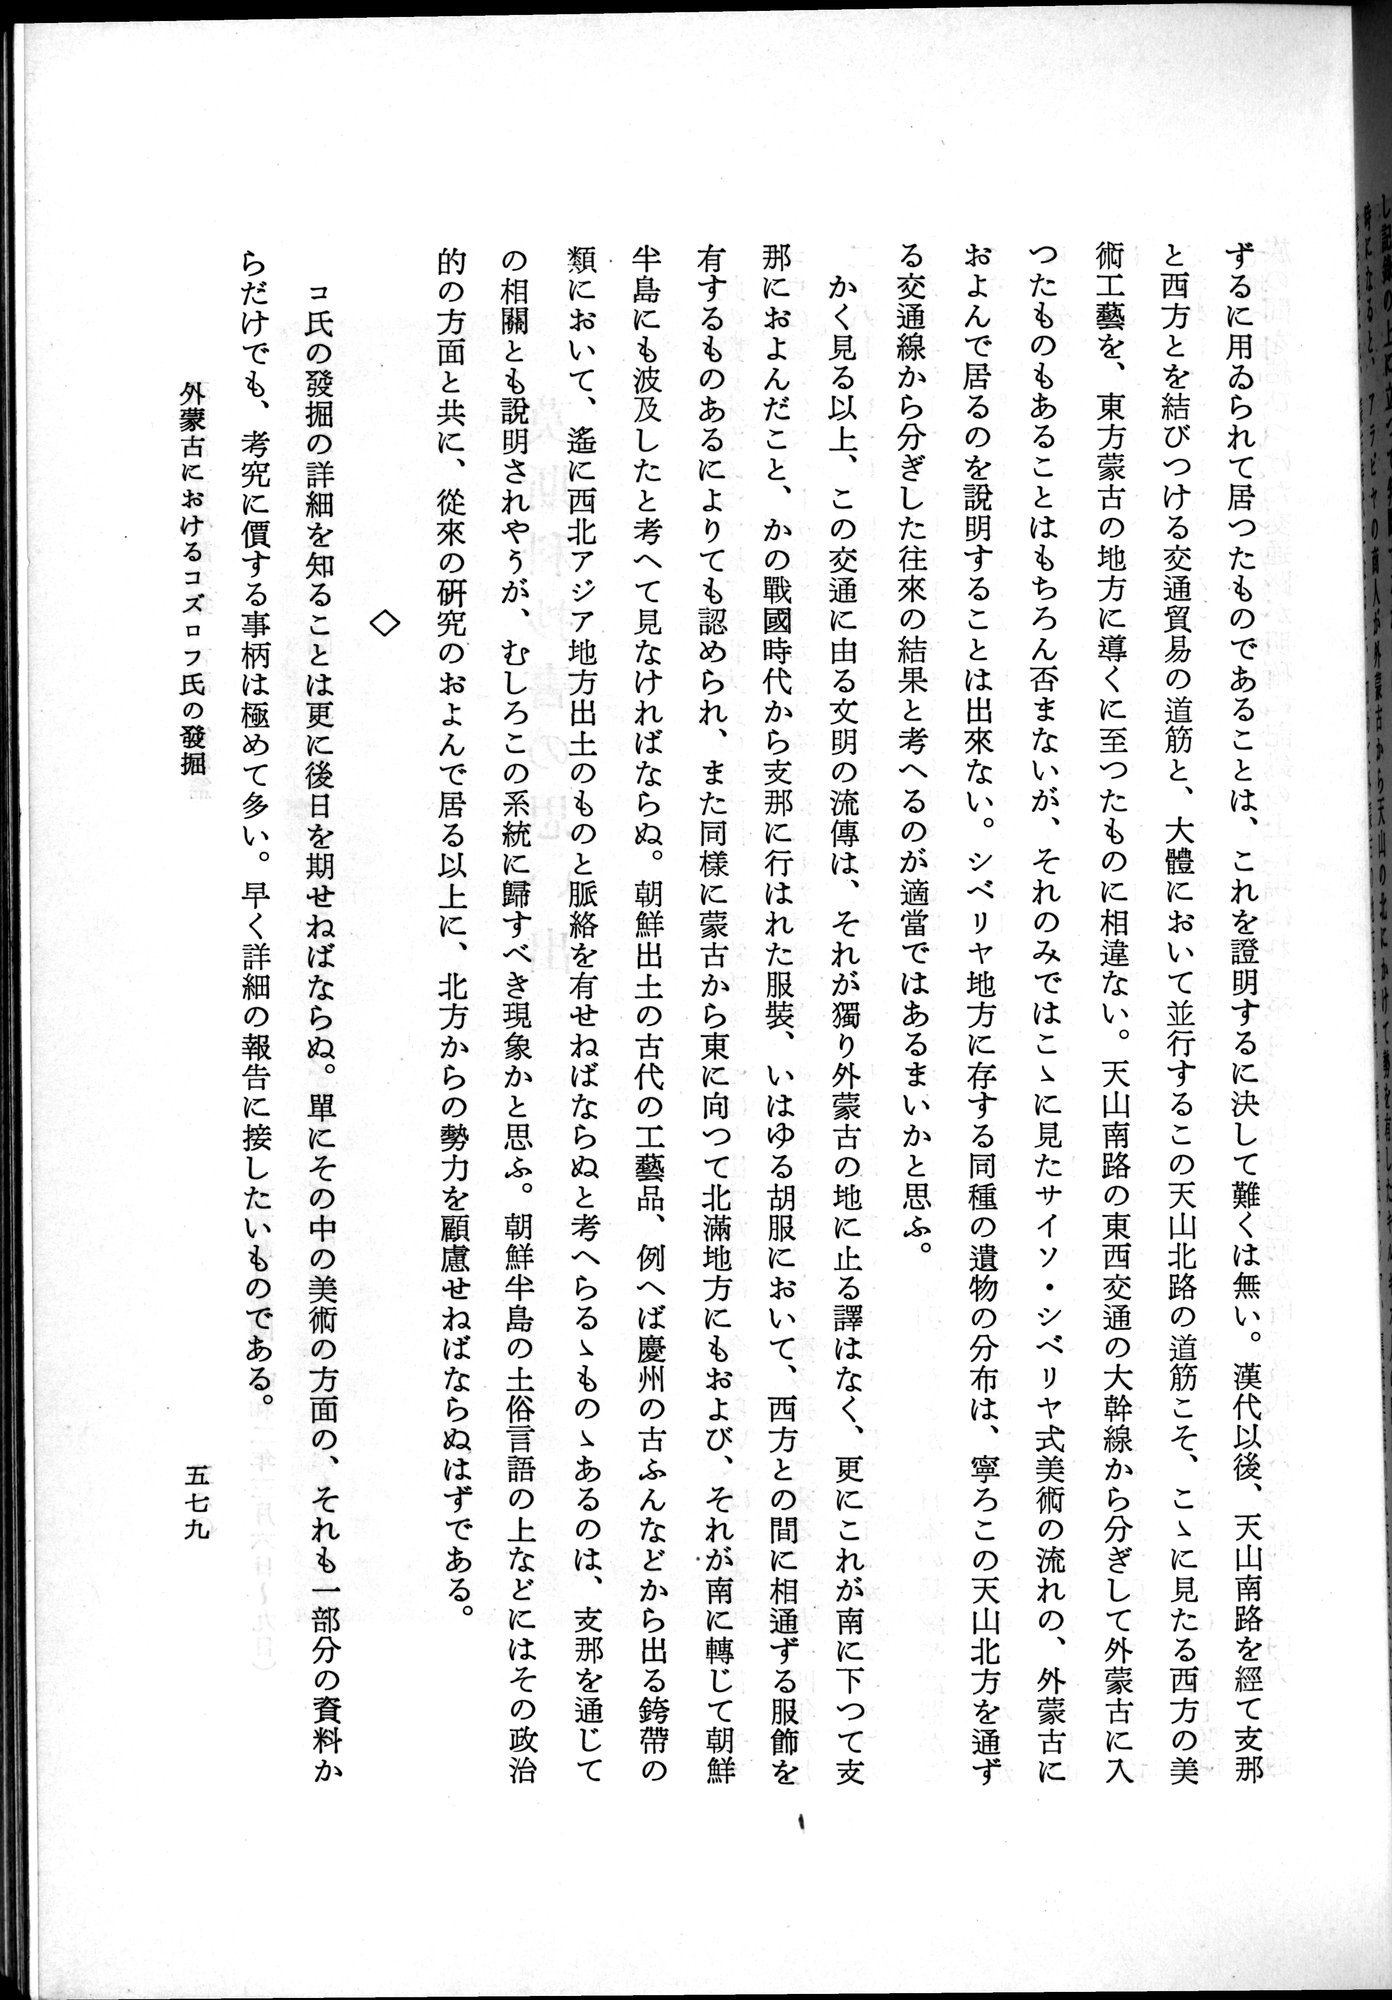 羽田博士史学論文集 : vol.2 / Page 641 (Grayscale High Resolution Image)